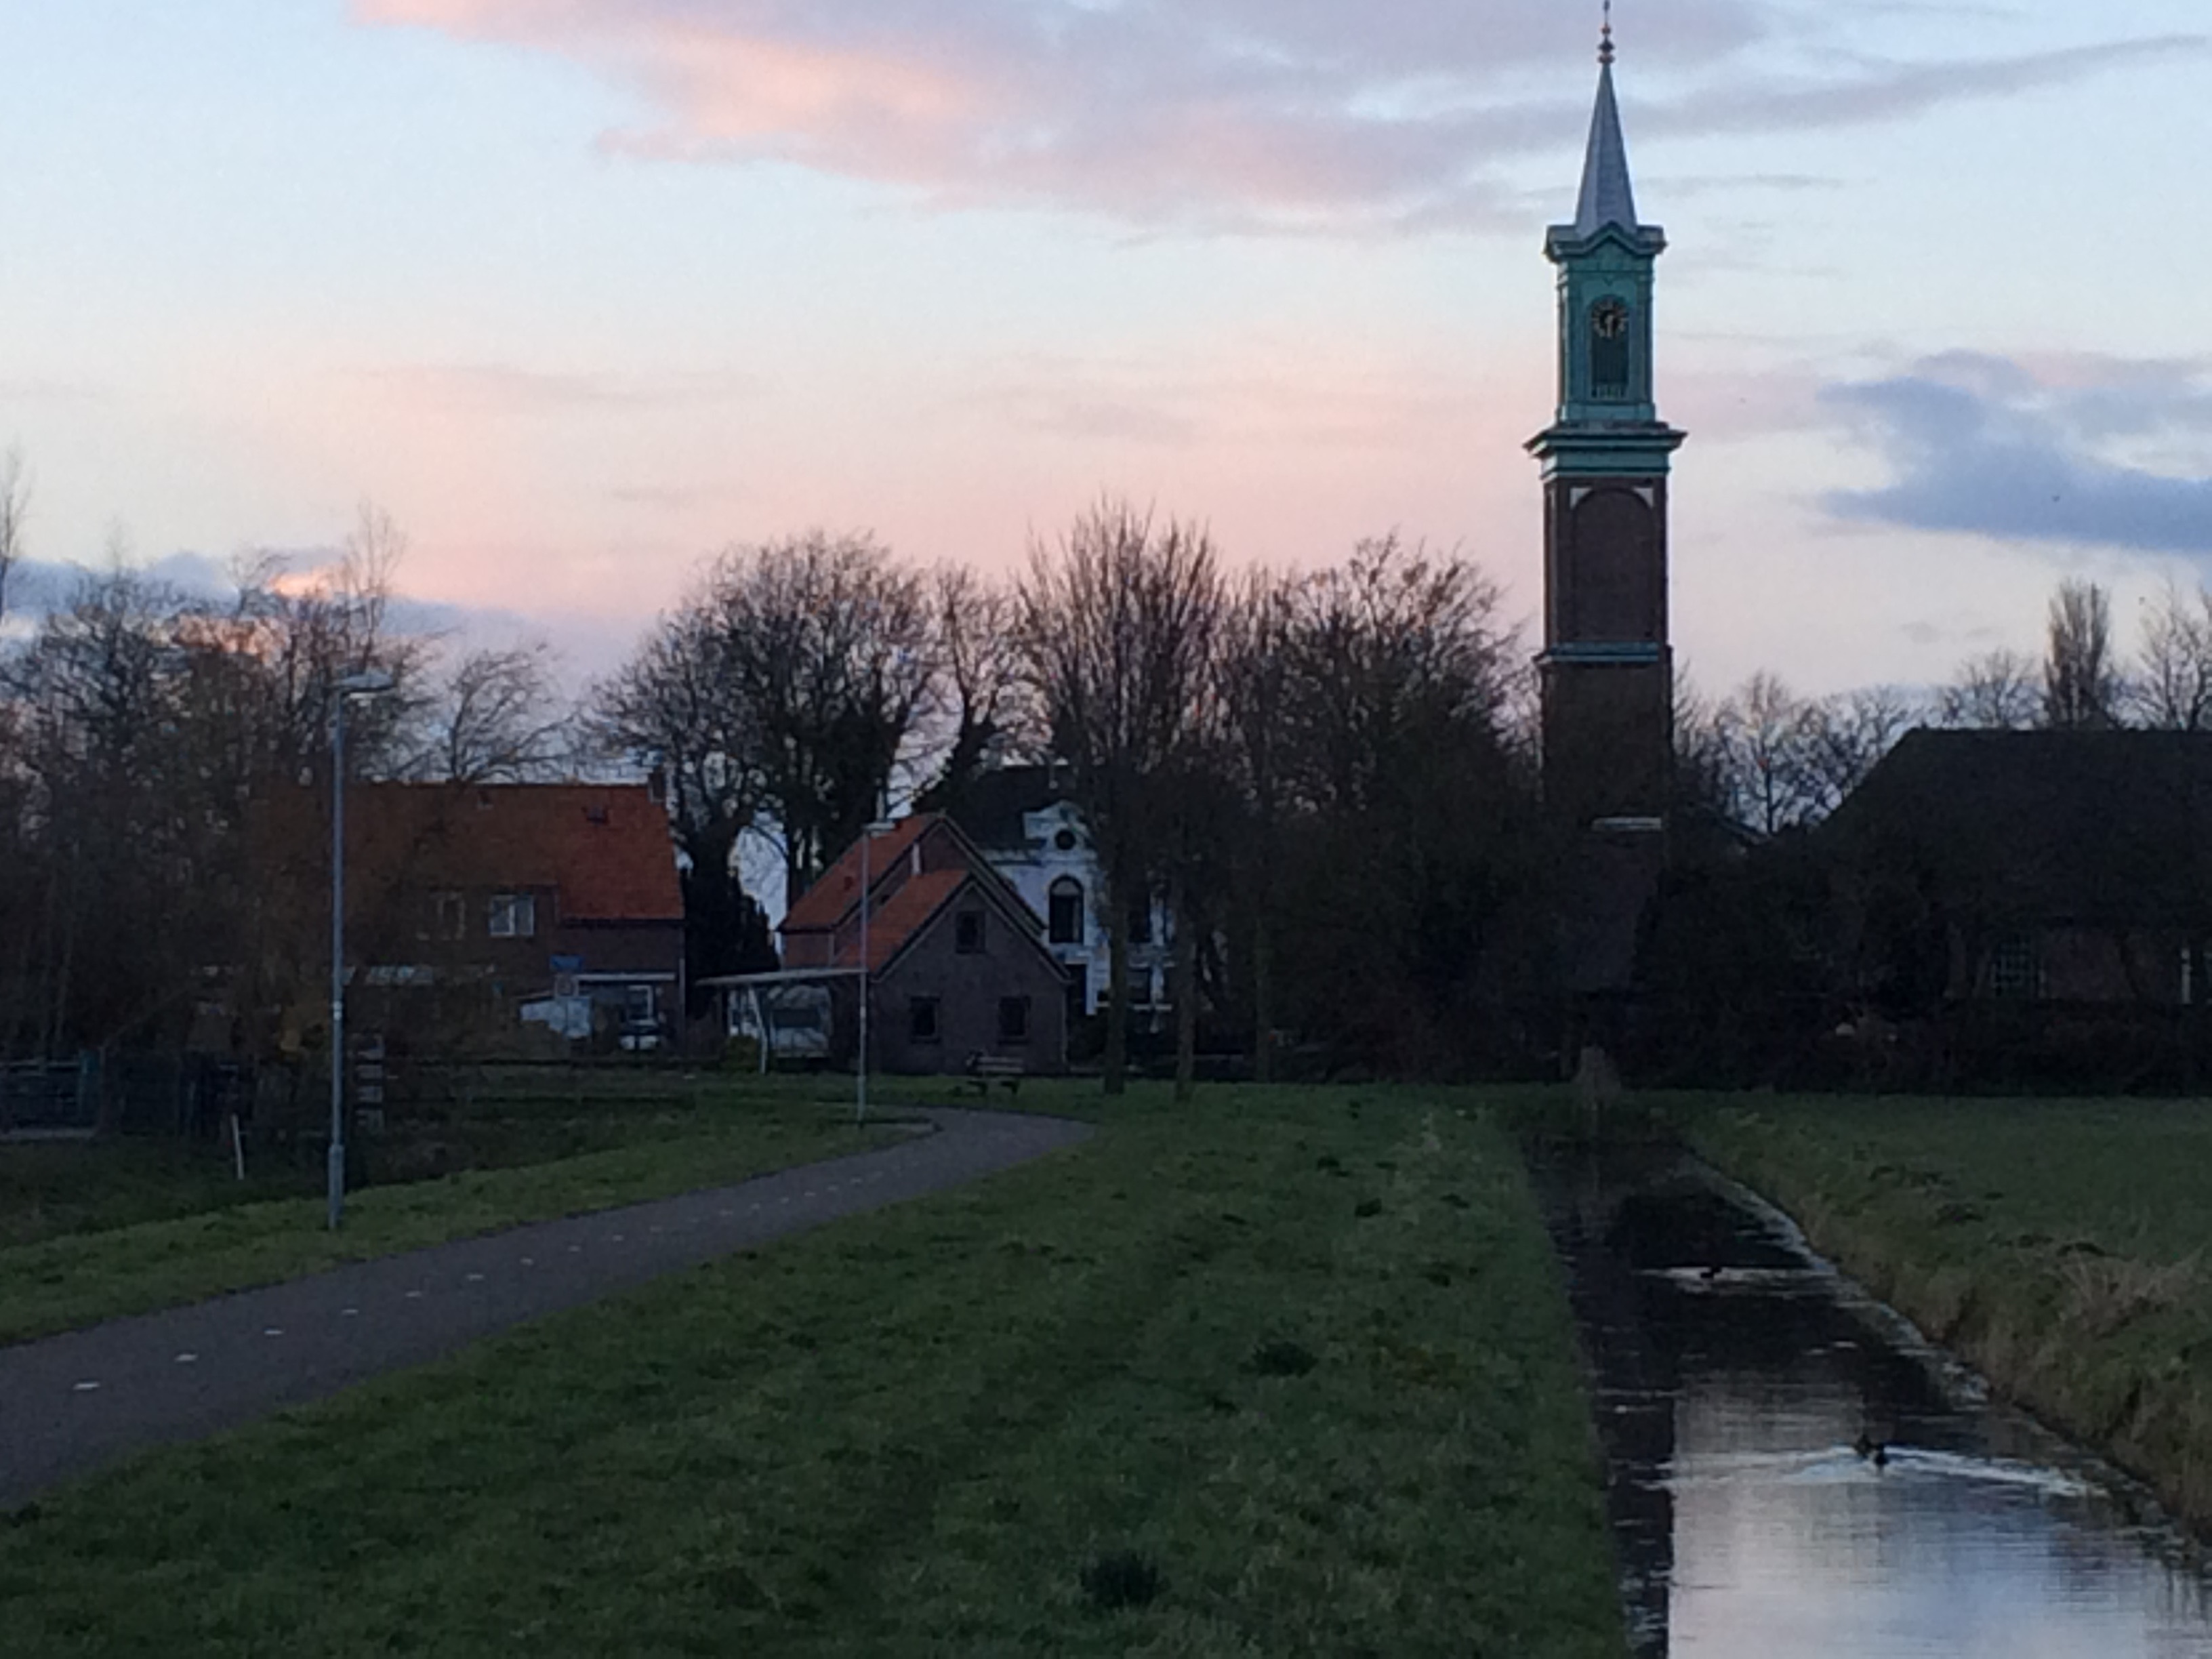 HuisMidwoud met Kerk uit polder